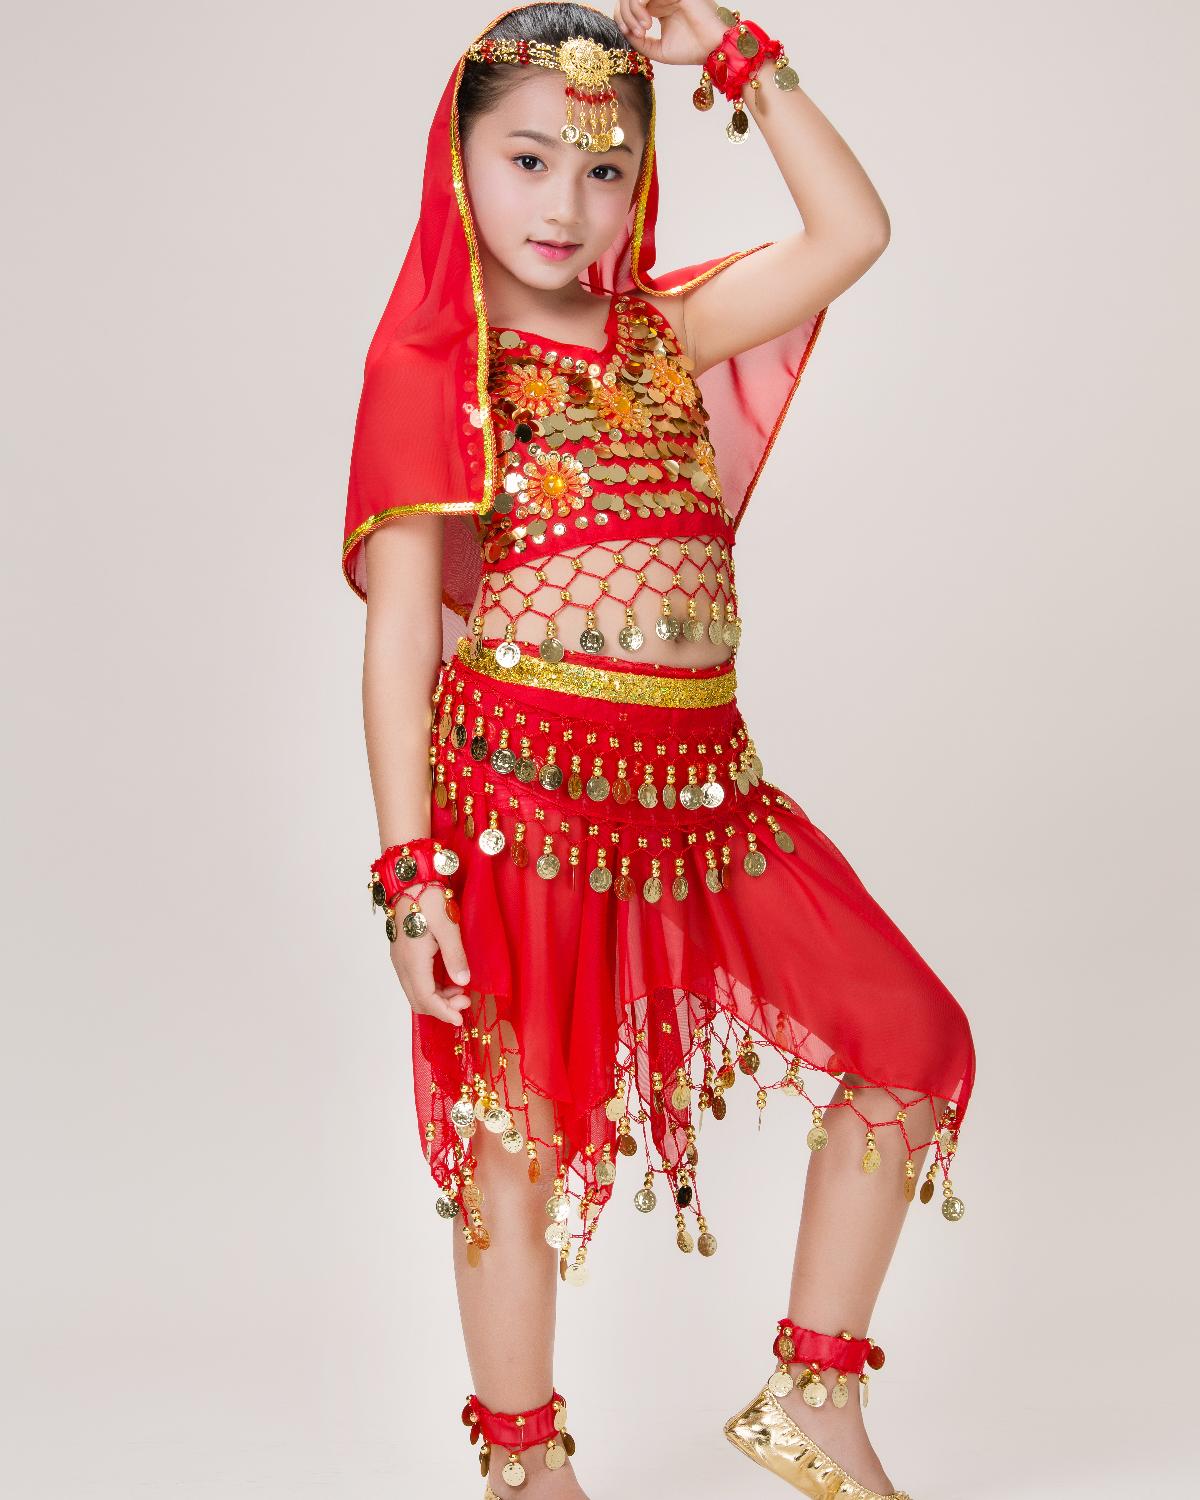 印度舞蹈服装女儿童肚皮舞服装少儿印度舞短裙纺幼儿园演出服二件套